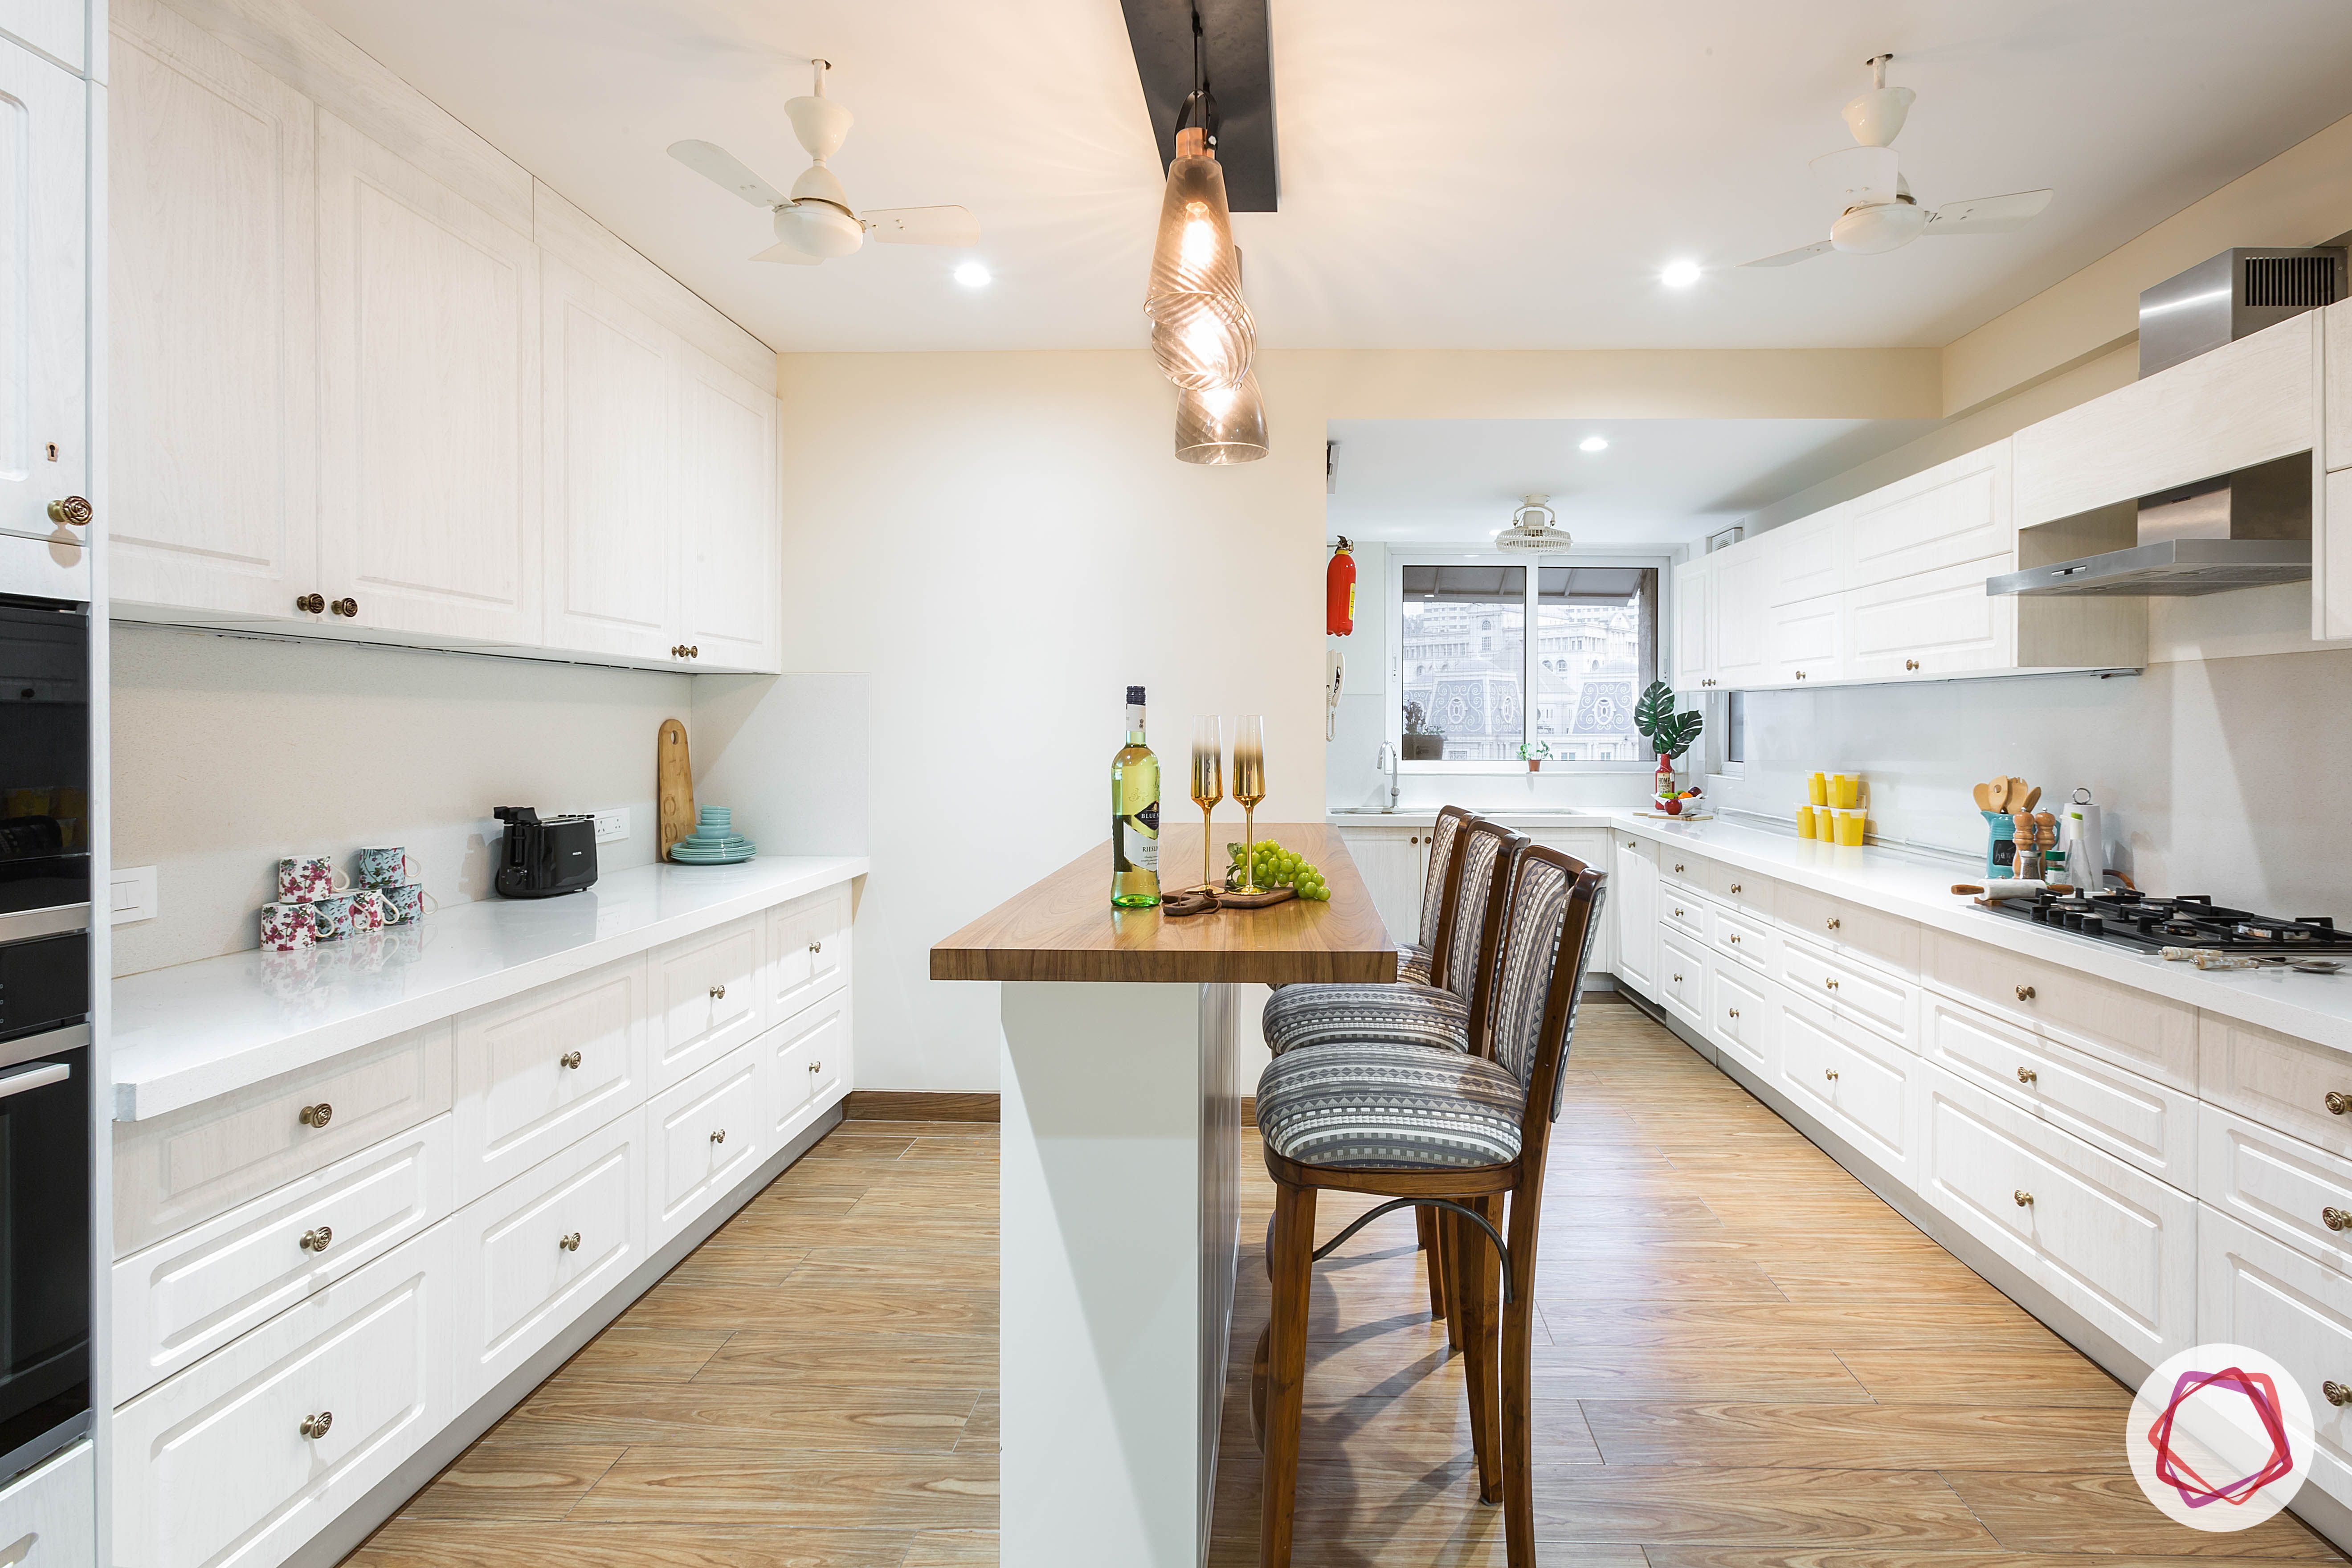 4bhk house plan-white kitchen designs-quartz countertops-white countertops-island kitchen designs-breakfast counter in kitchen-wooden flooring designs